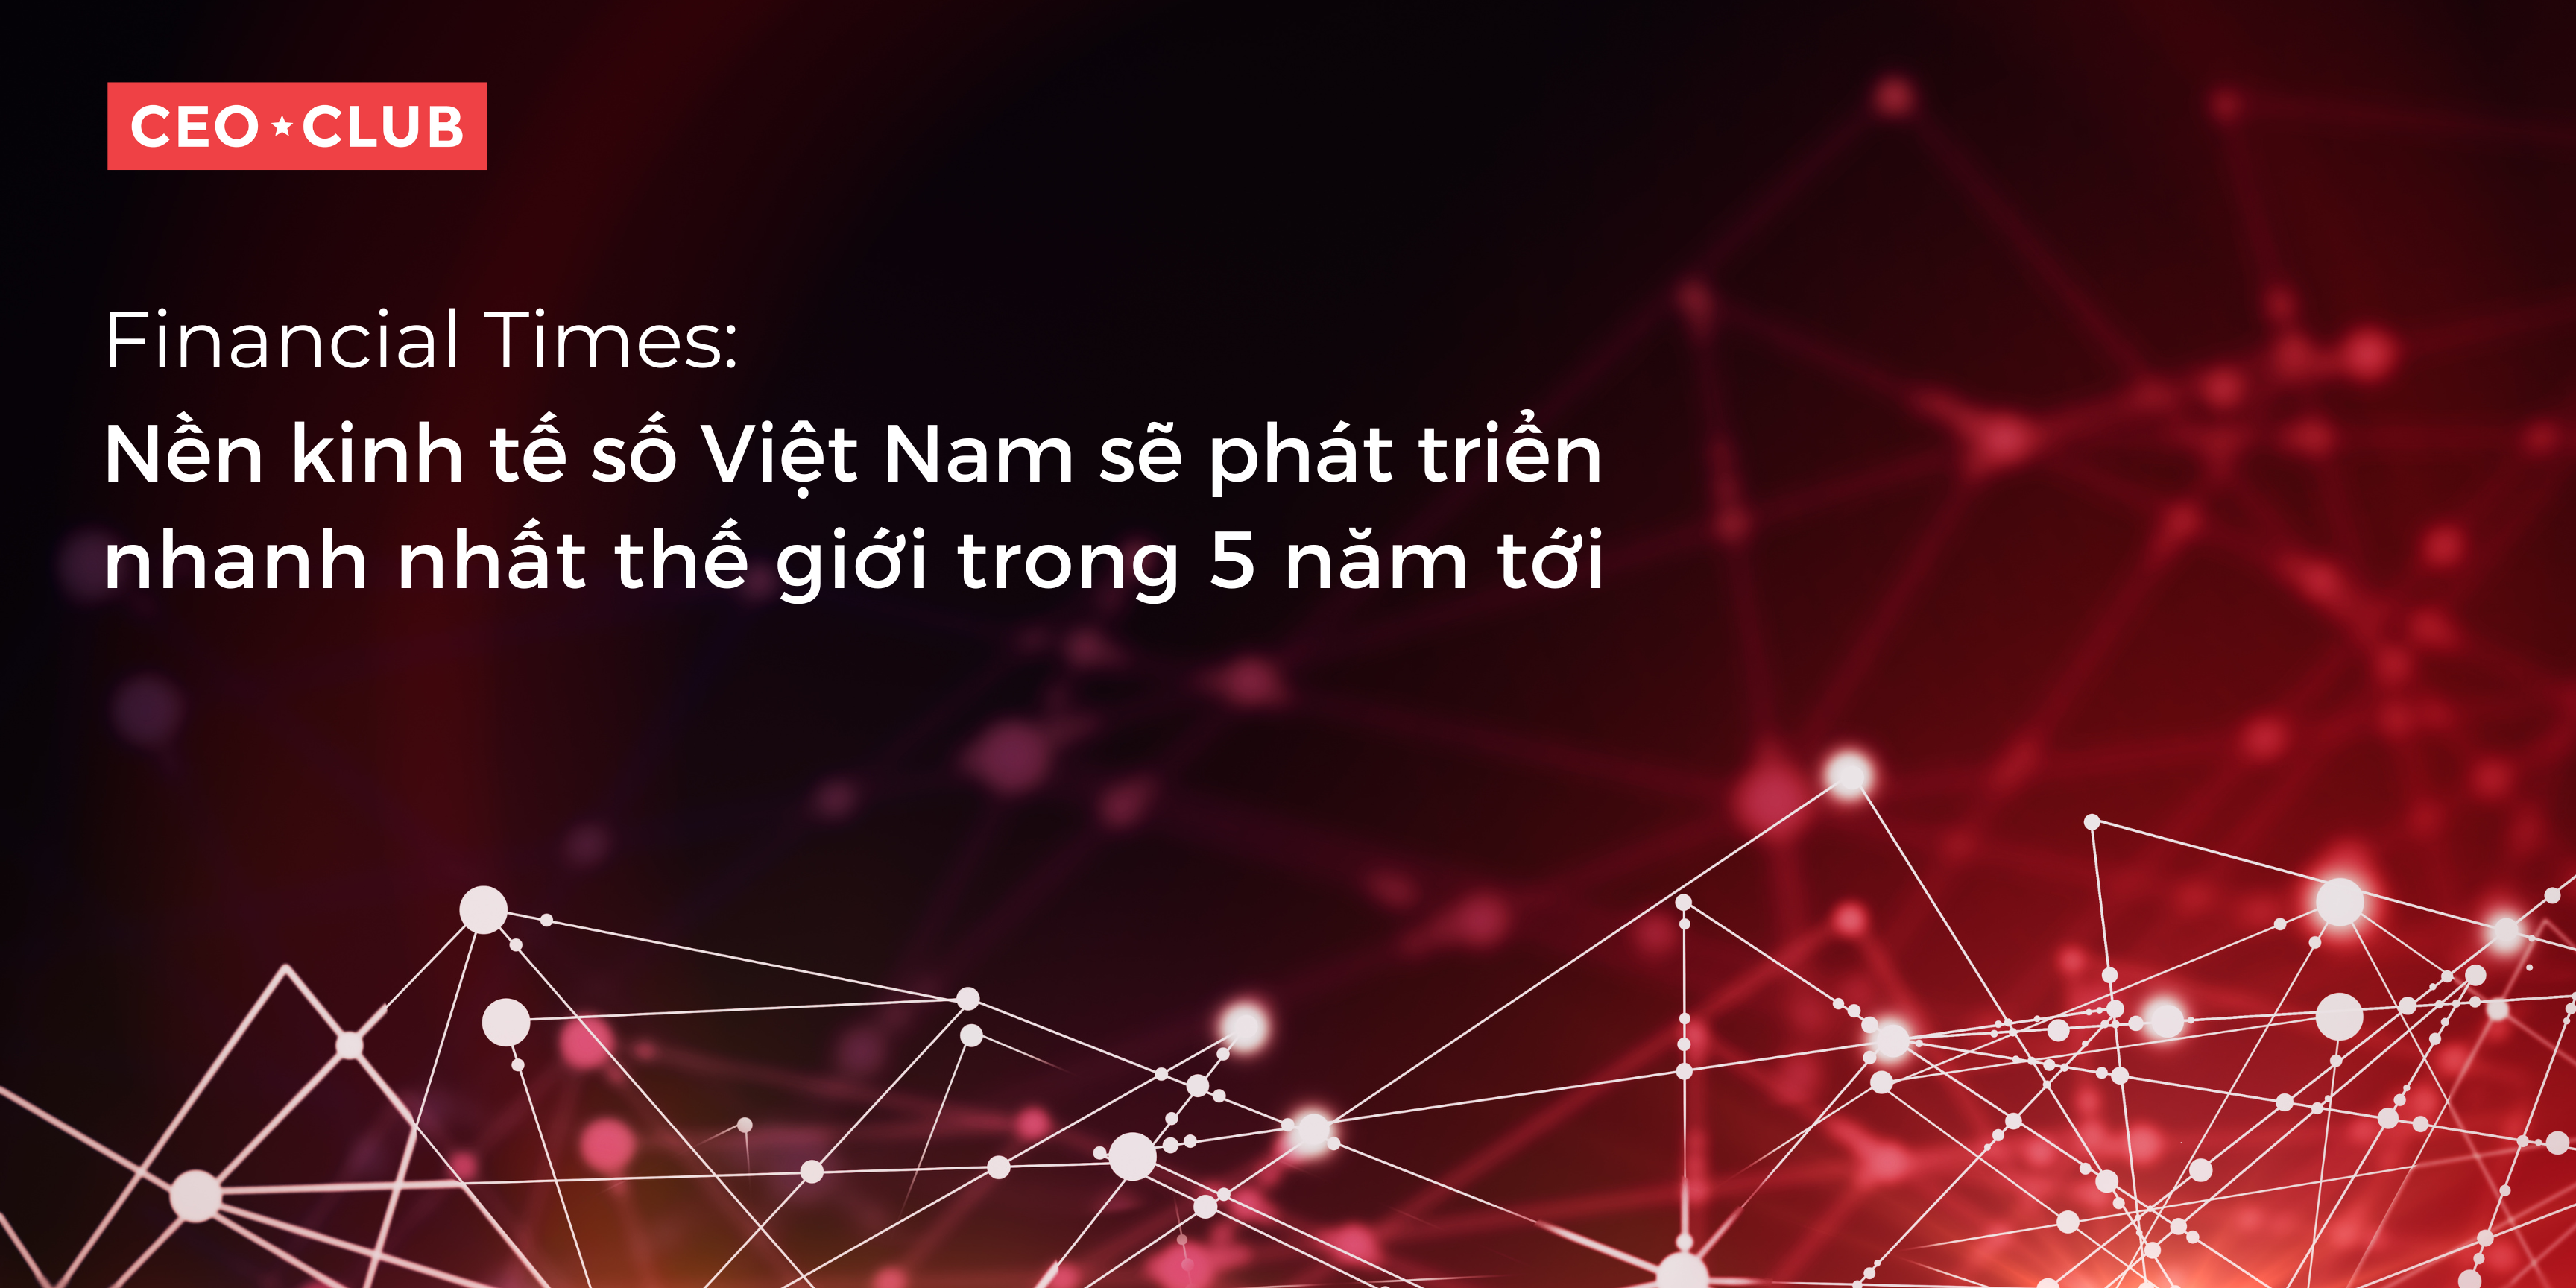 Financial Times: Nền kinh tế số Việt Nam sẽ phát triển nhanh nhất thế giới trong 5 năm tới